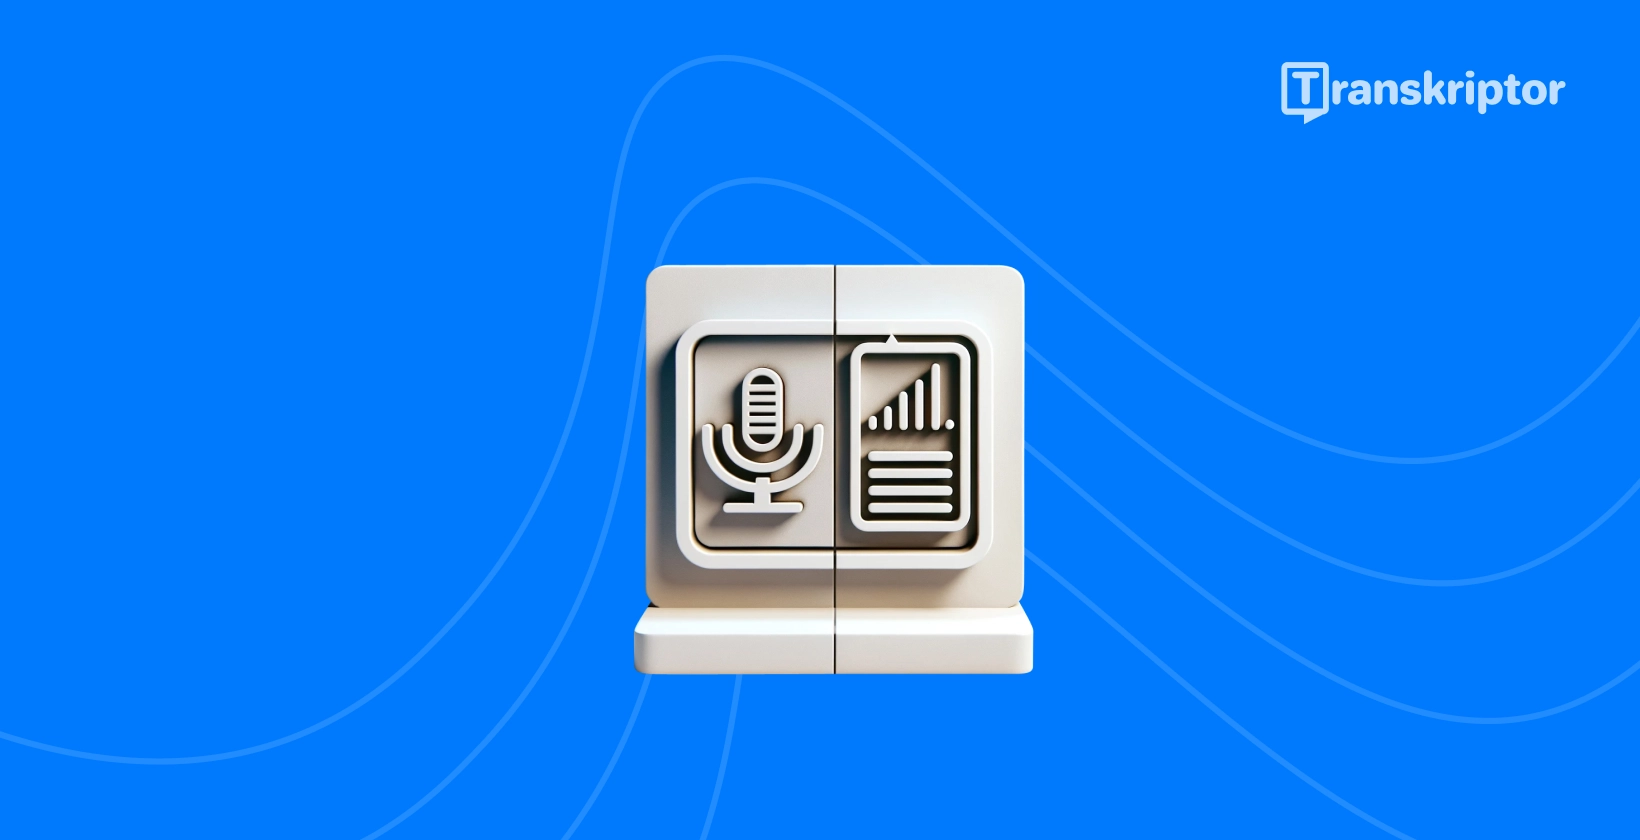 Titru un transkripcijas atšķirības parādītas ar mikrofona un dokumentu ikonām.